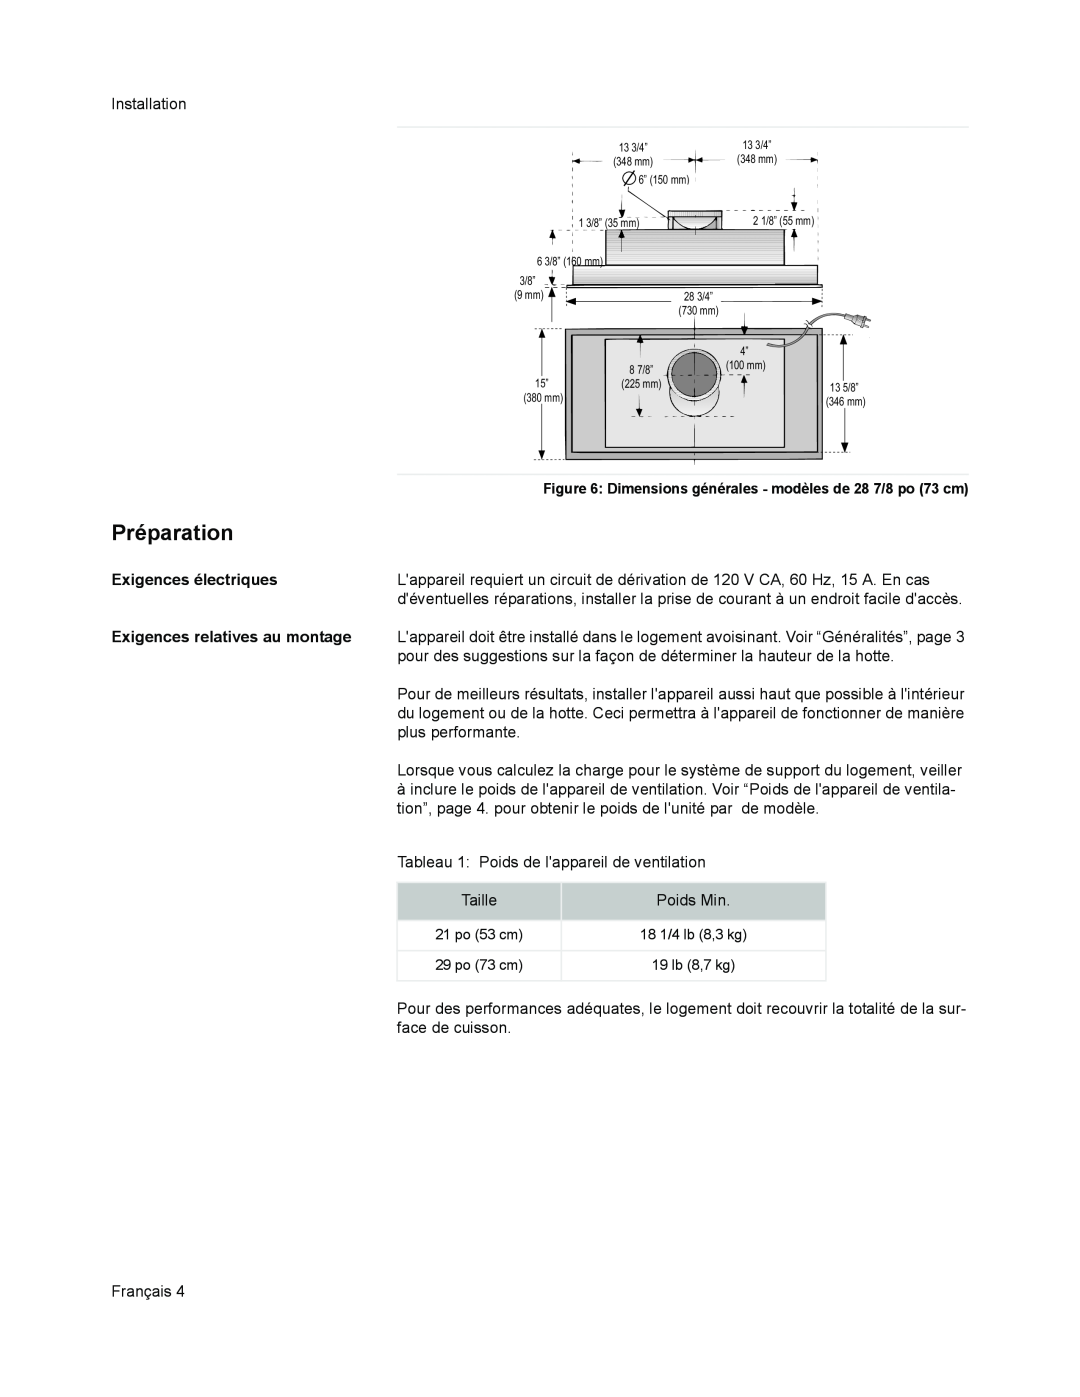 Bosch Appliances DHL 755 B installation manual Préparation, Exigences électriques, Exigences relatives au montage 